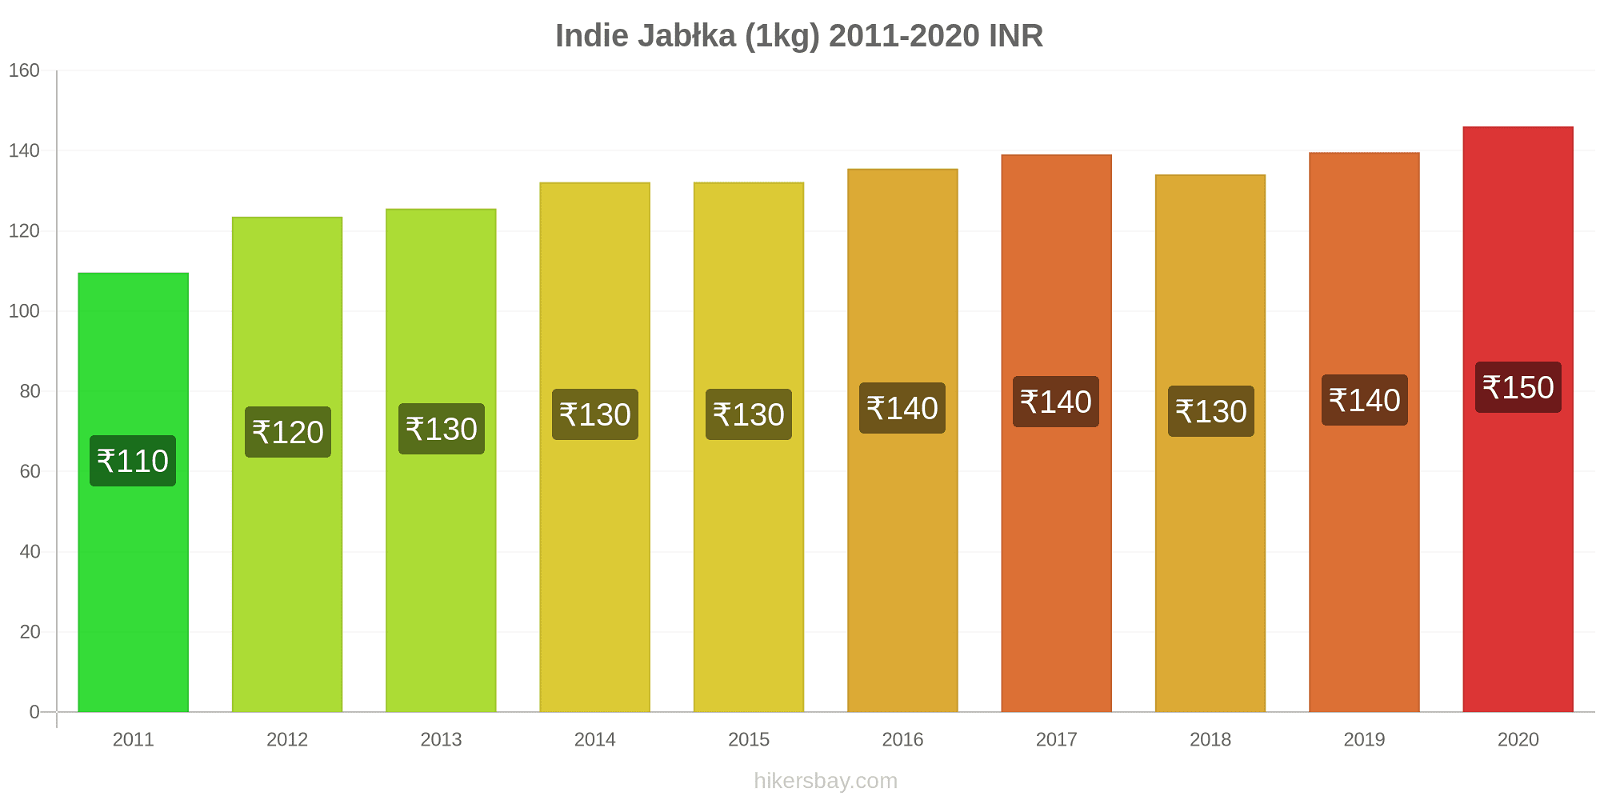 Indie zmiany cen Jabłka (1kg) hikersbay.com